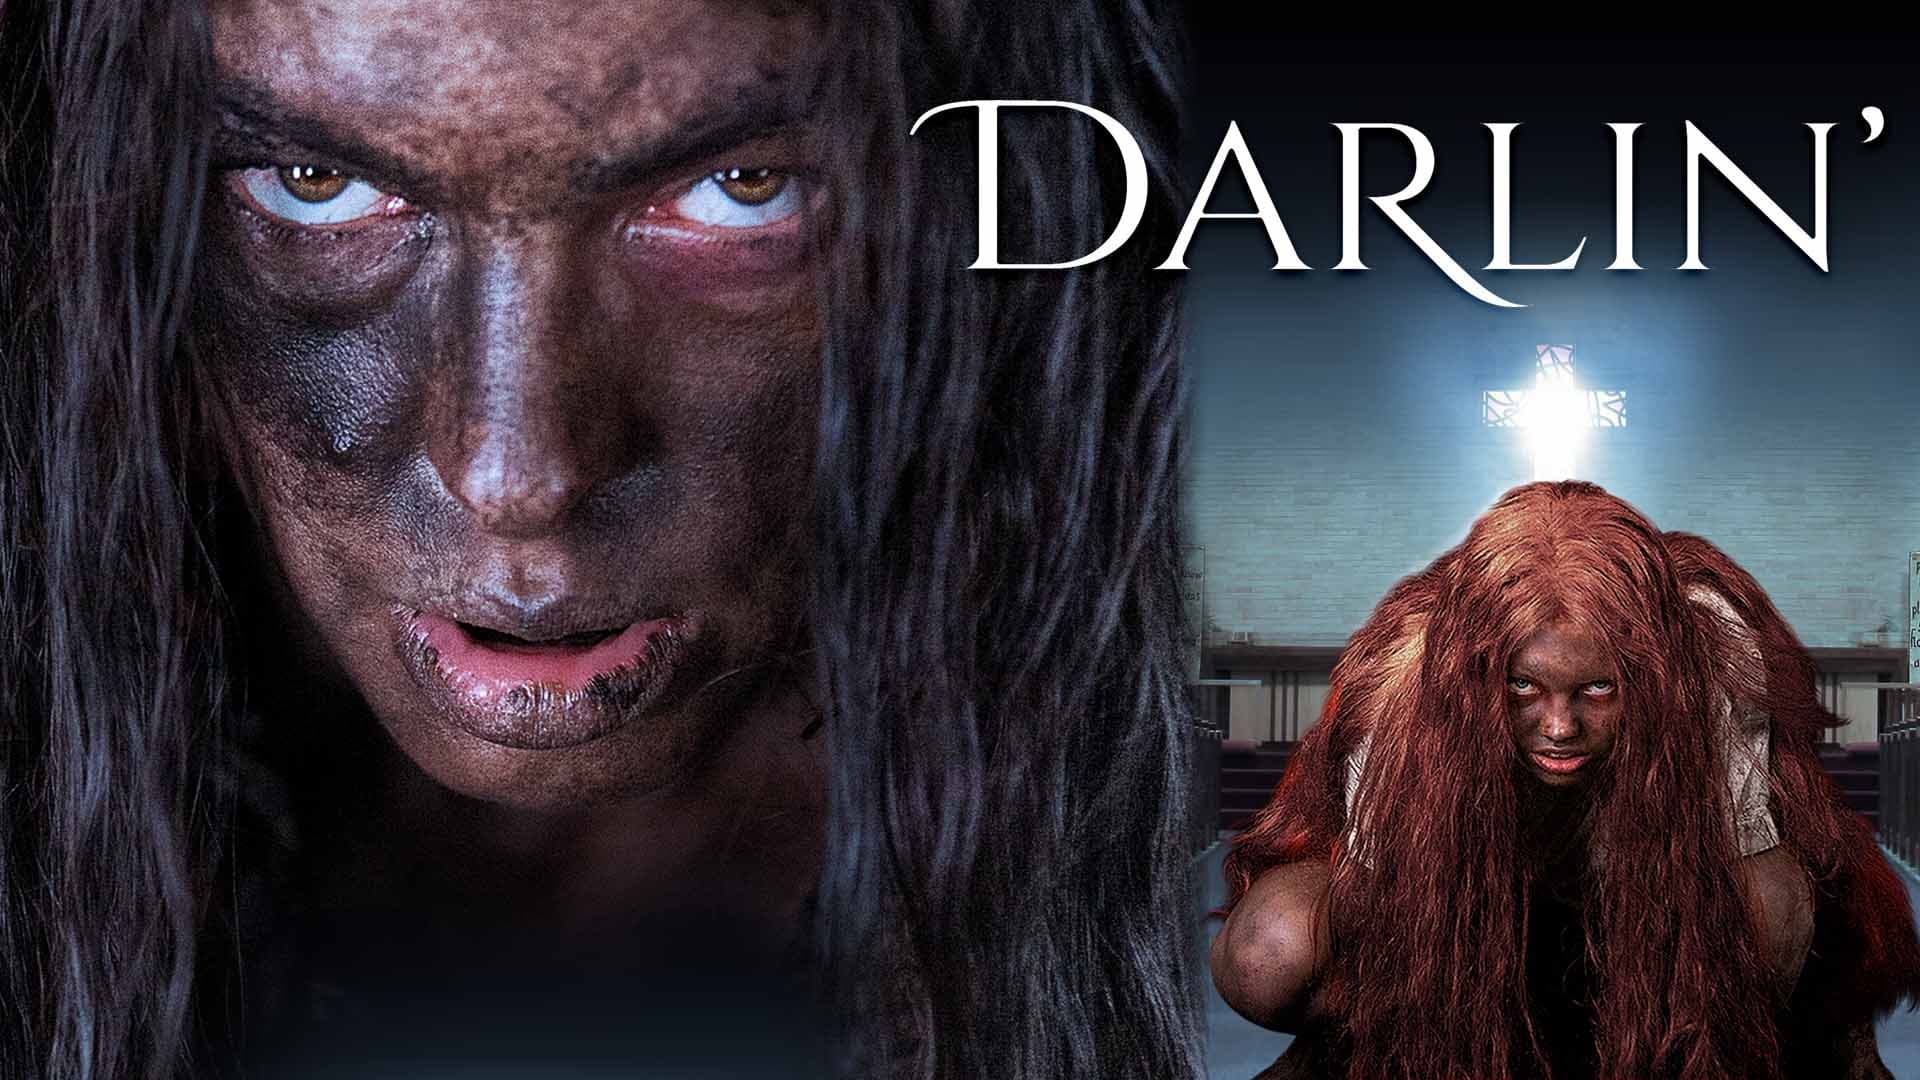 Darlin’ (2019)